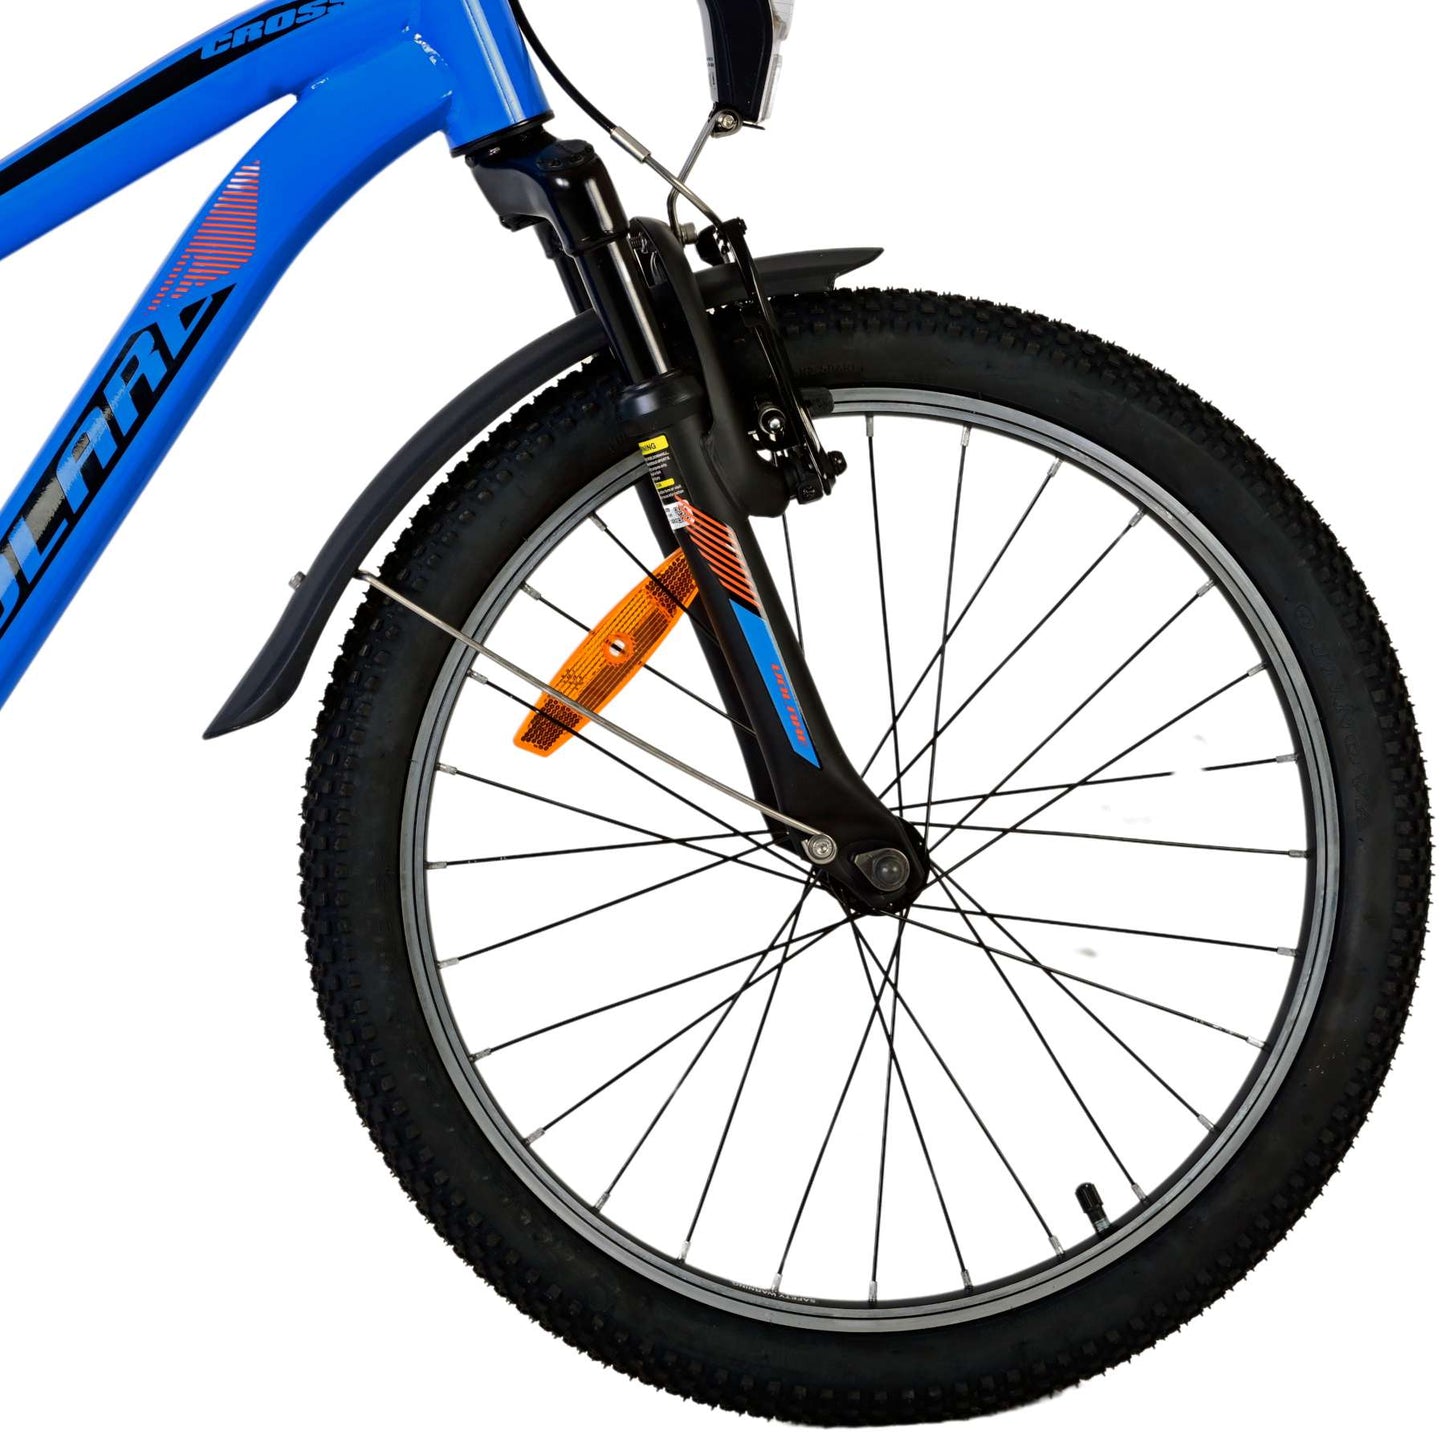 Bicicleta para niños Volare Cross - Niños - 20 pulgadas - Azul